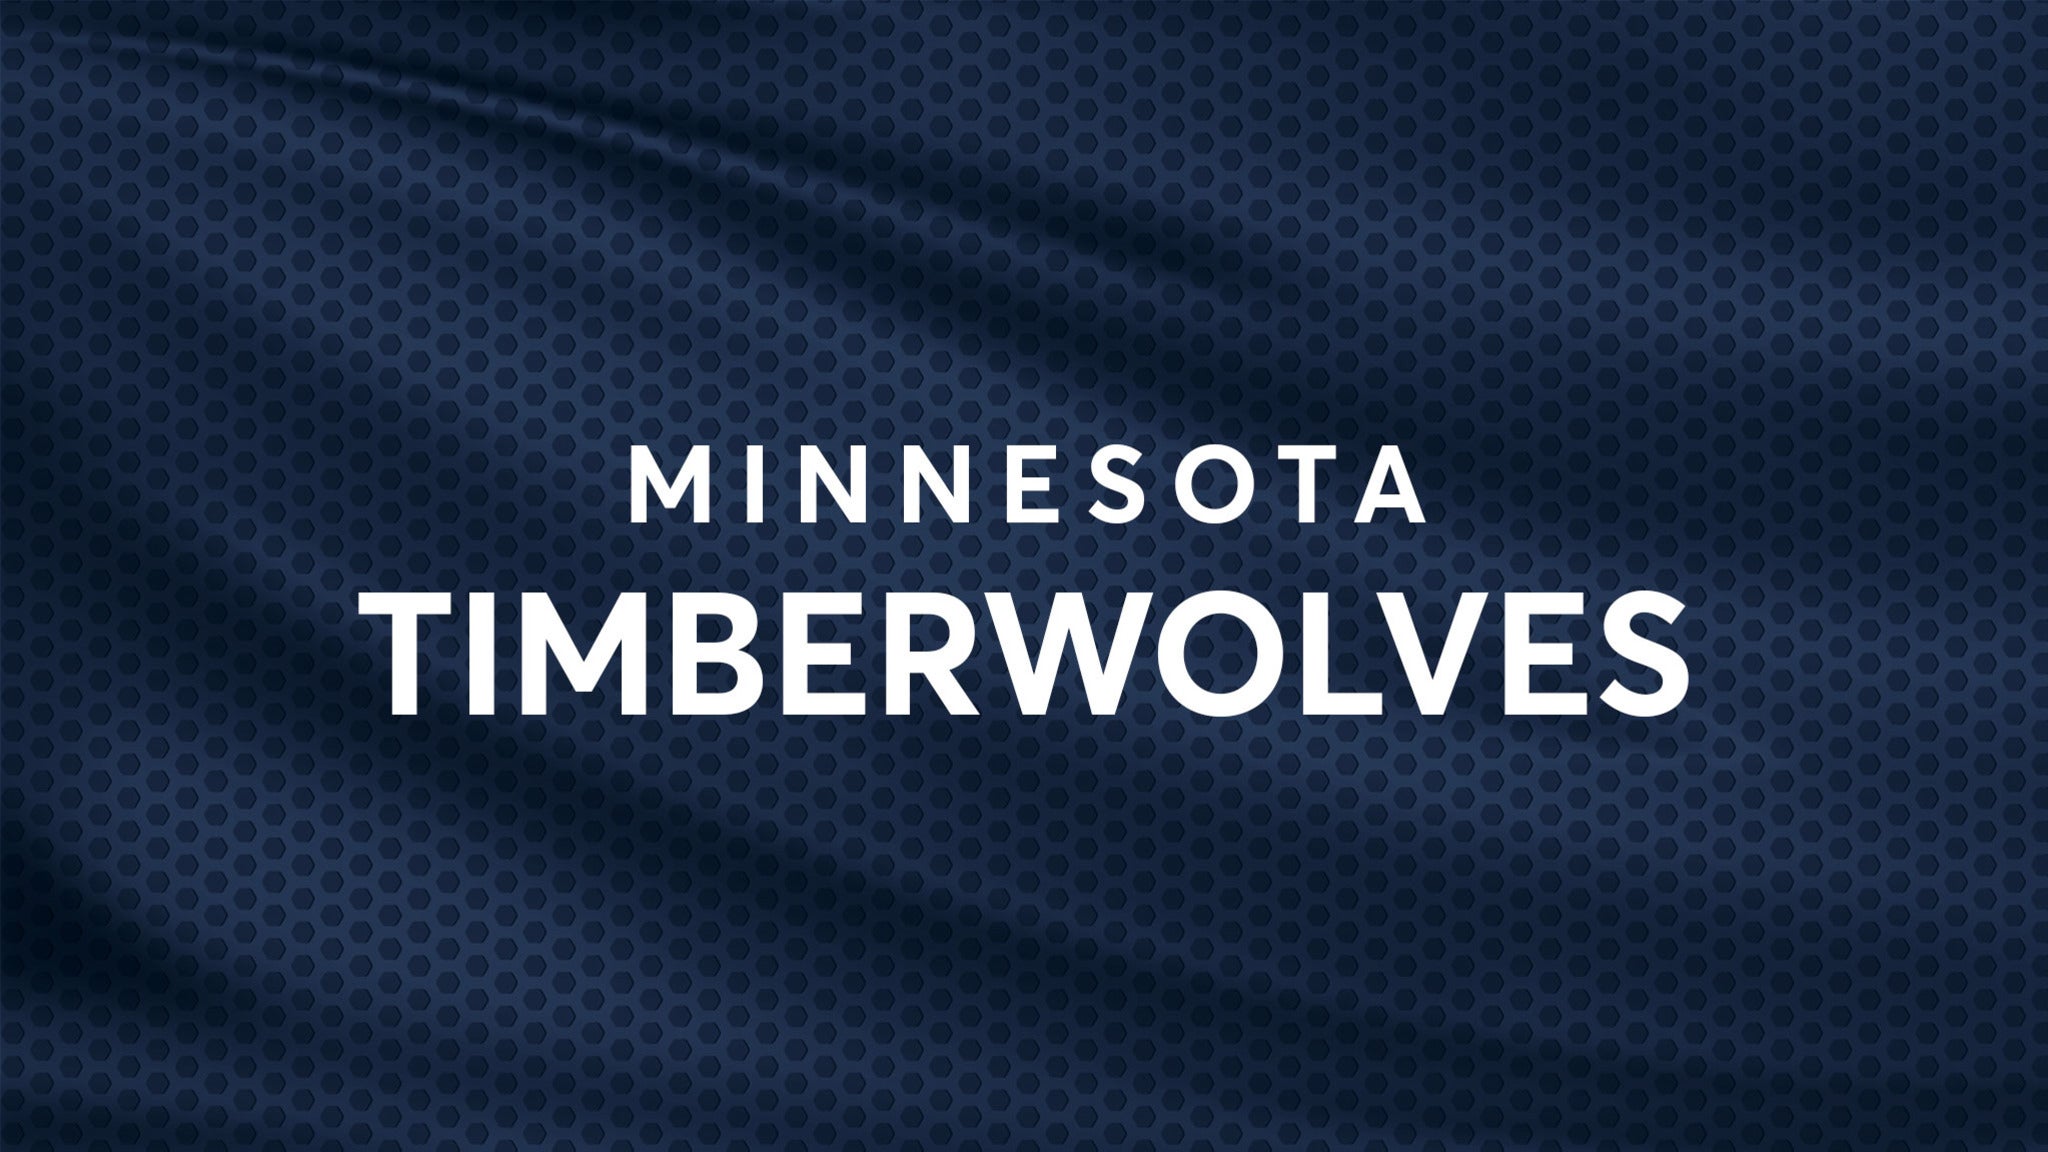 Minnesota Timberwolves vs. Sacramento Kings